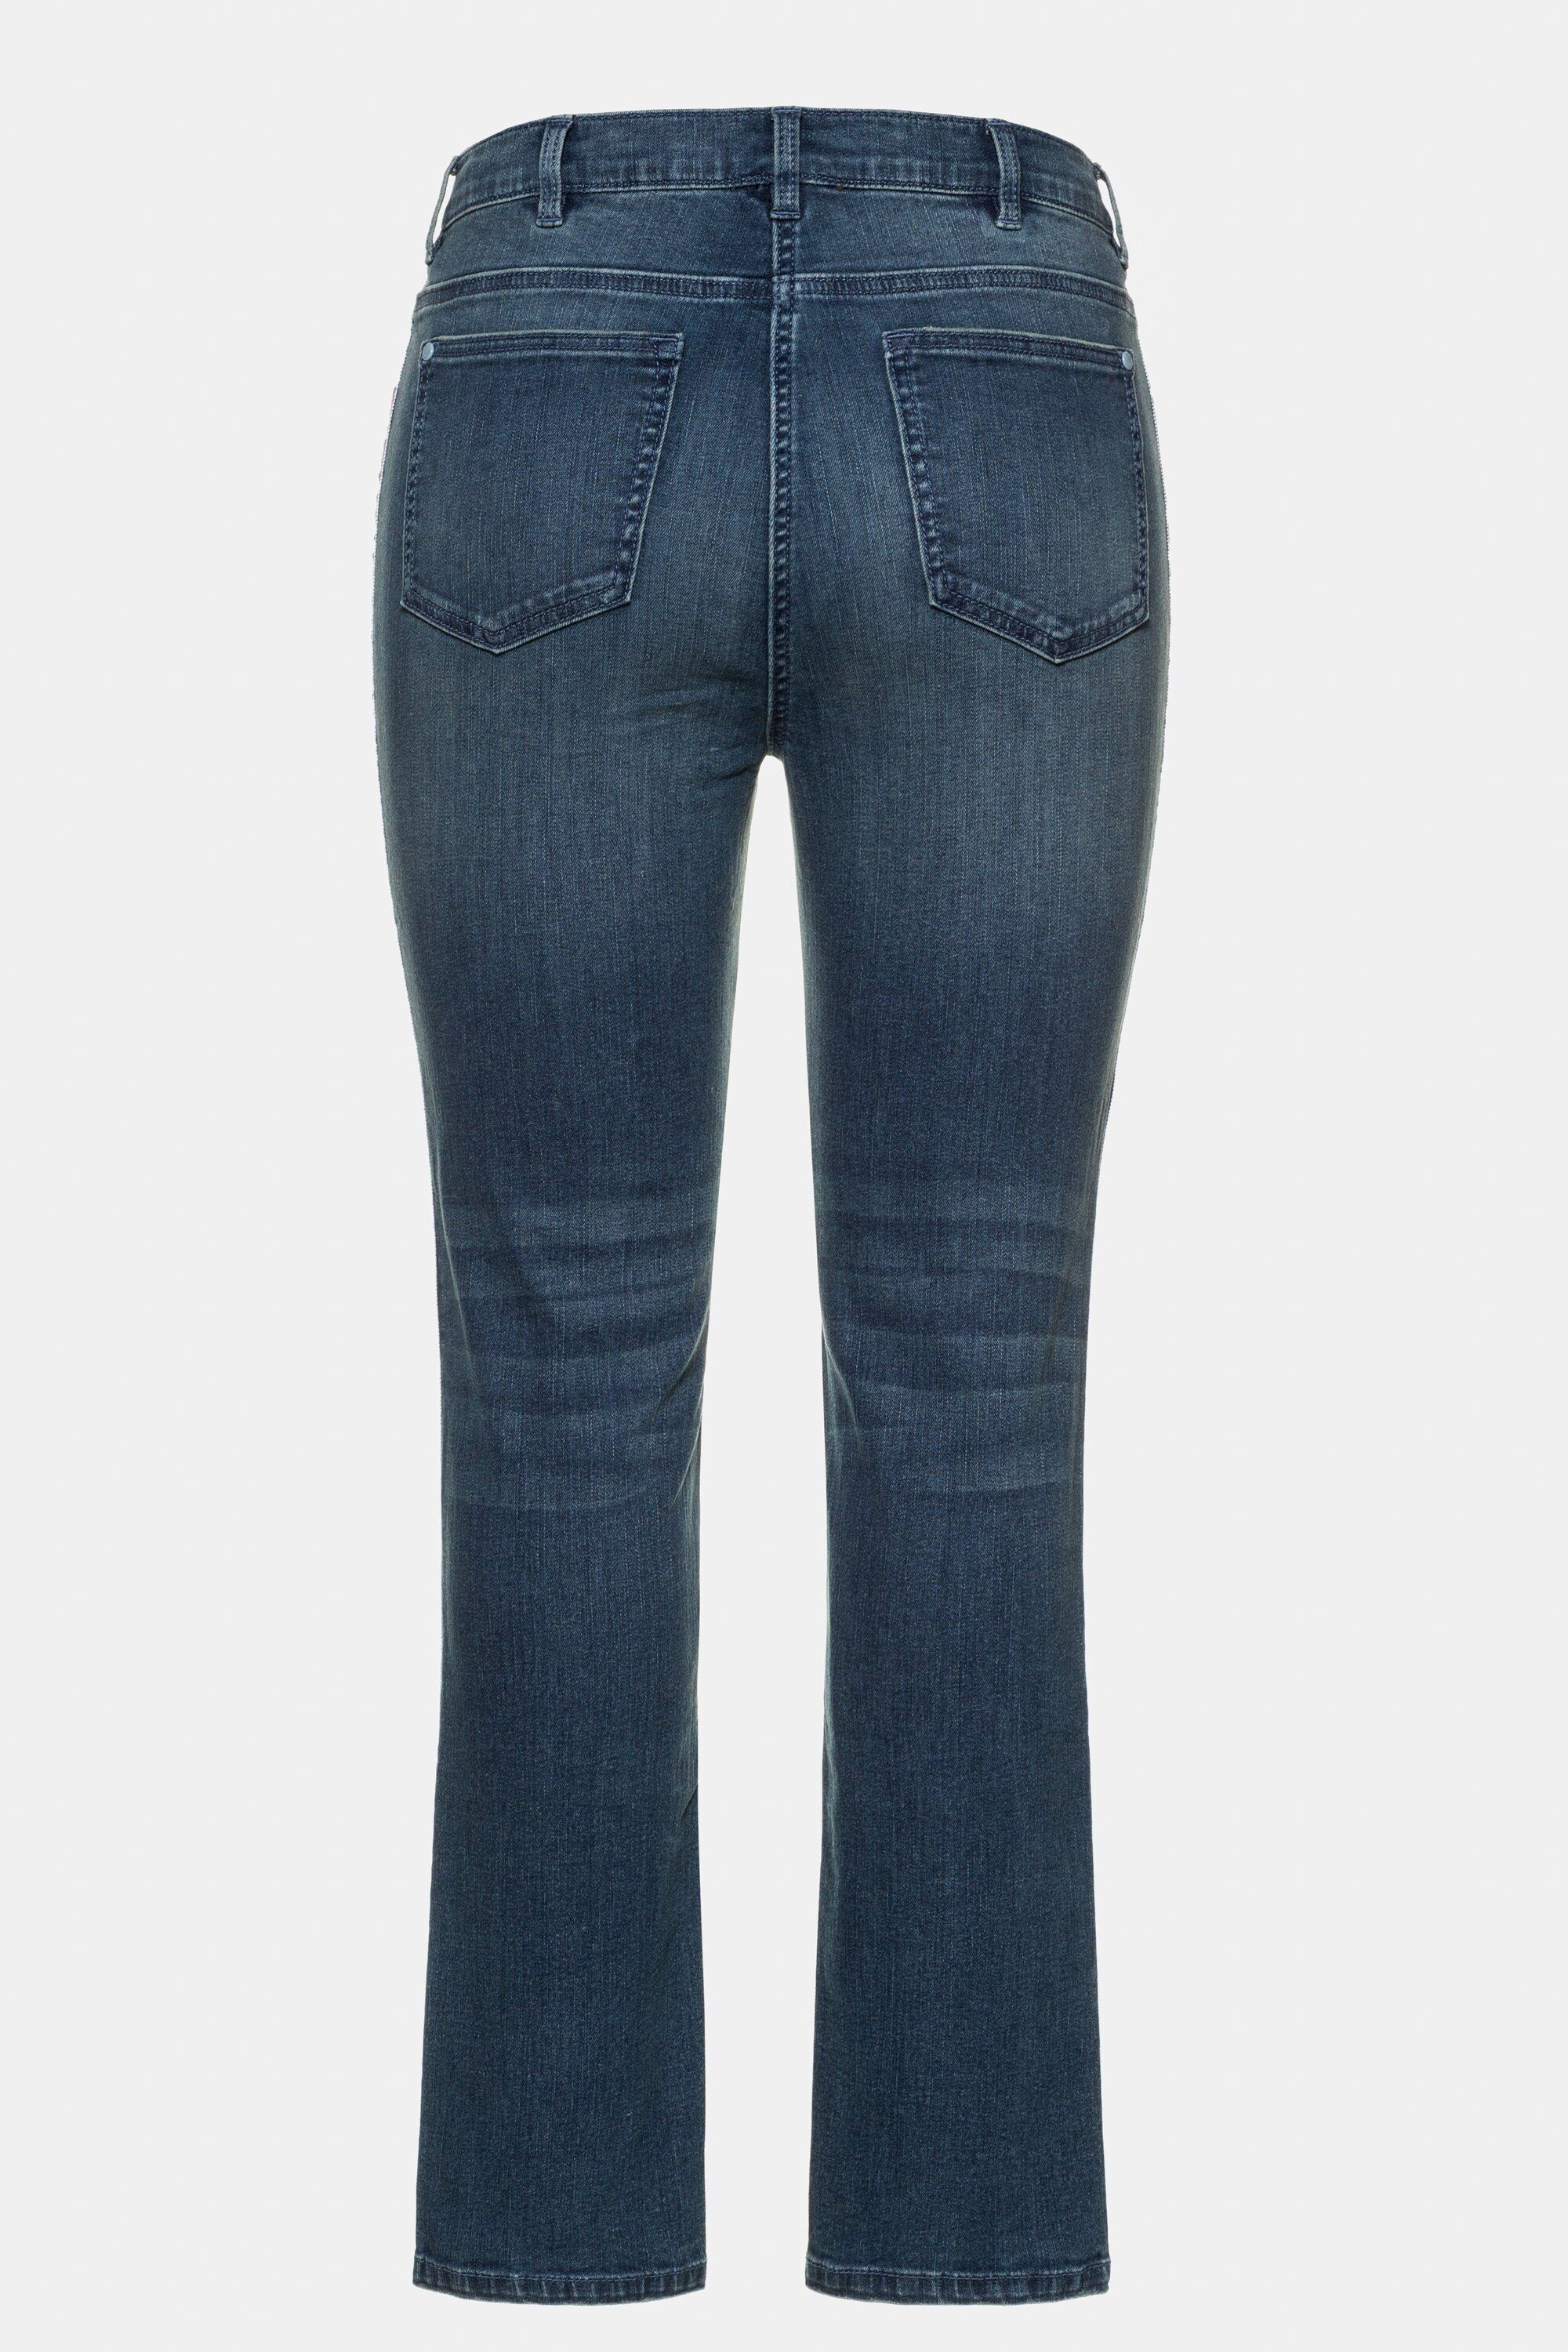 leicht schmale Ulla 5-Pocket-Form Funktionshose Popken destroyed Galon Jeans